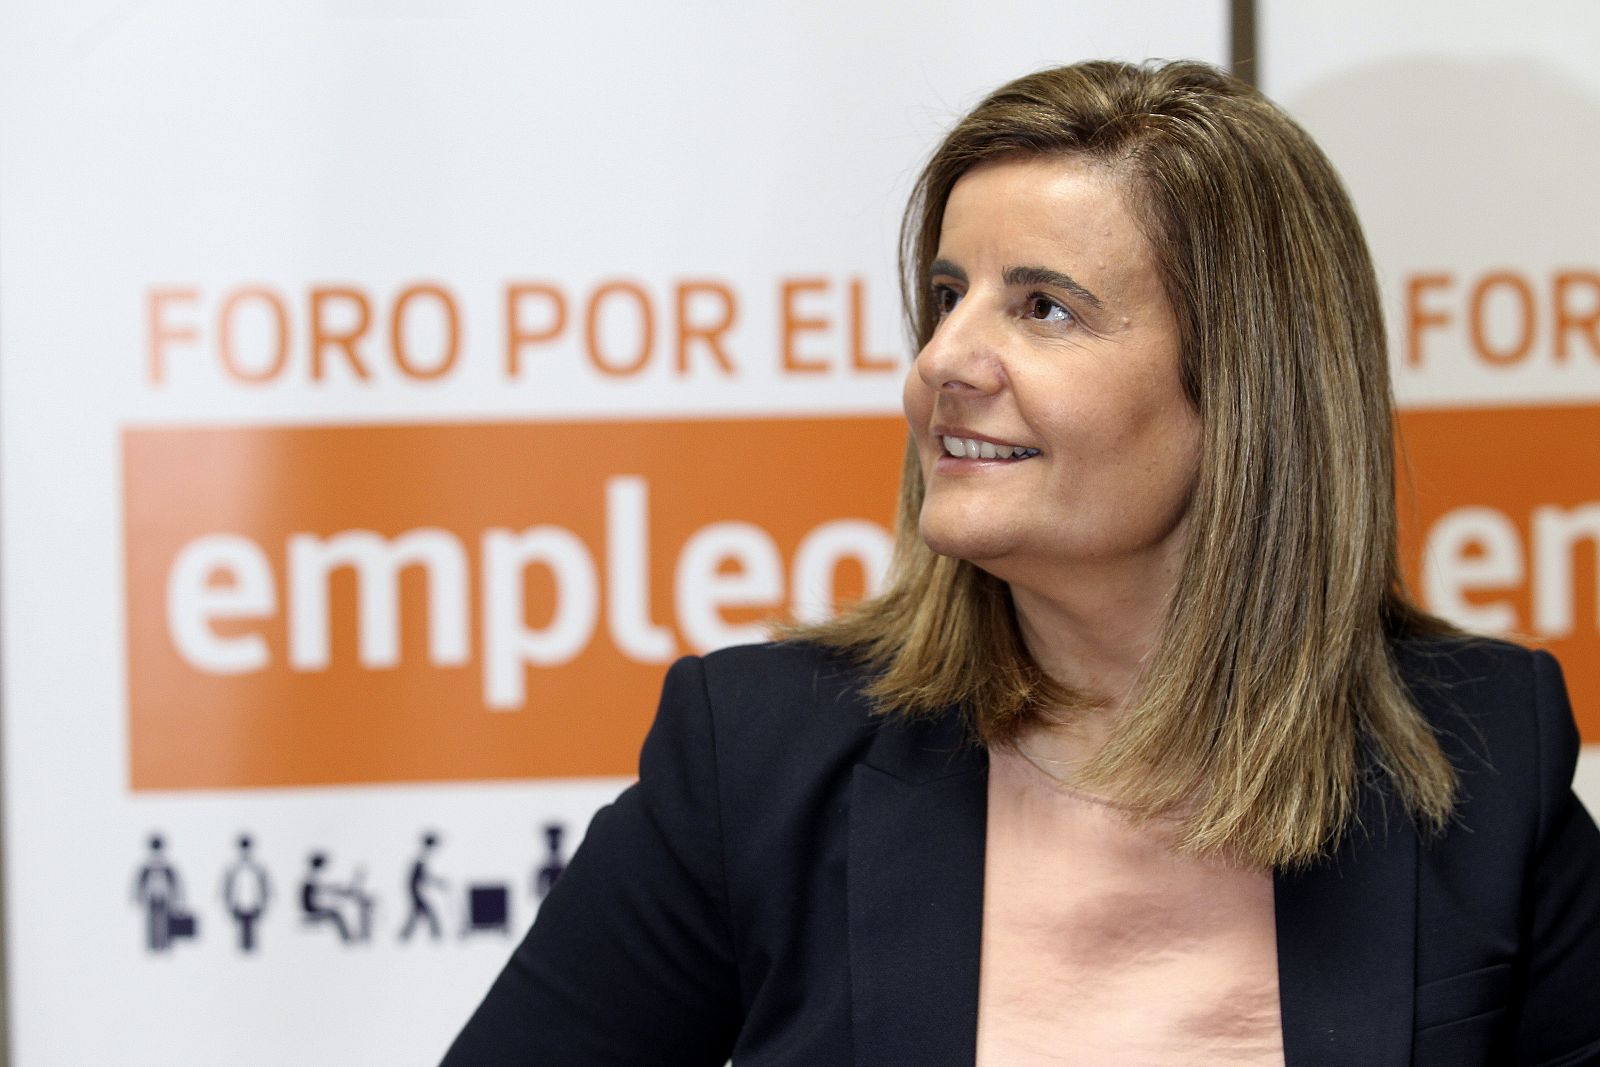 La ministra de Empleo, Fátima Báñez, avanza que el paro volverá a bajar en abril